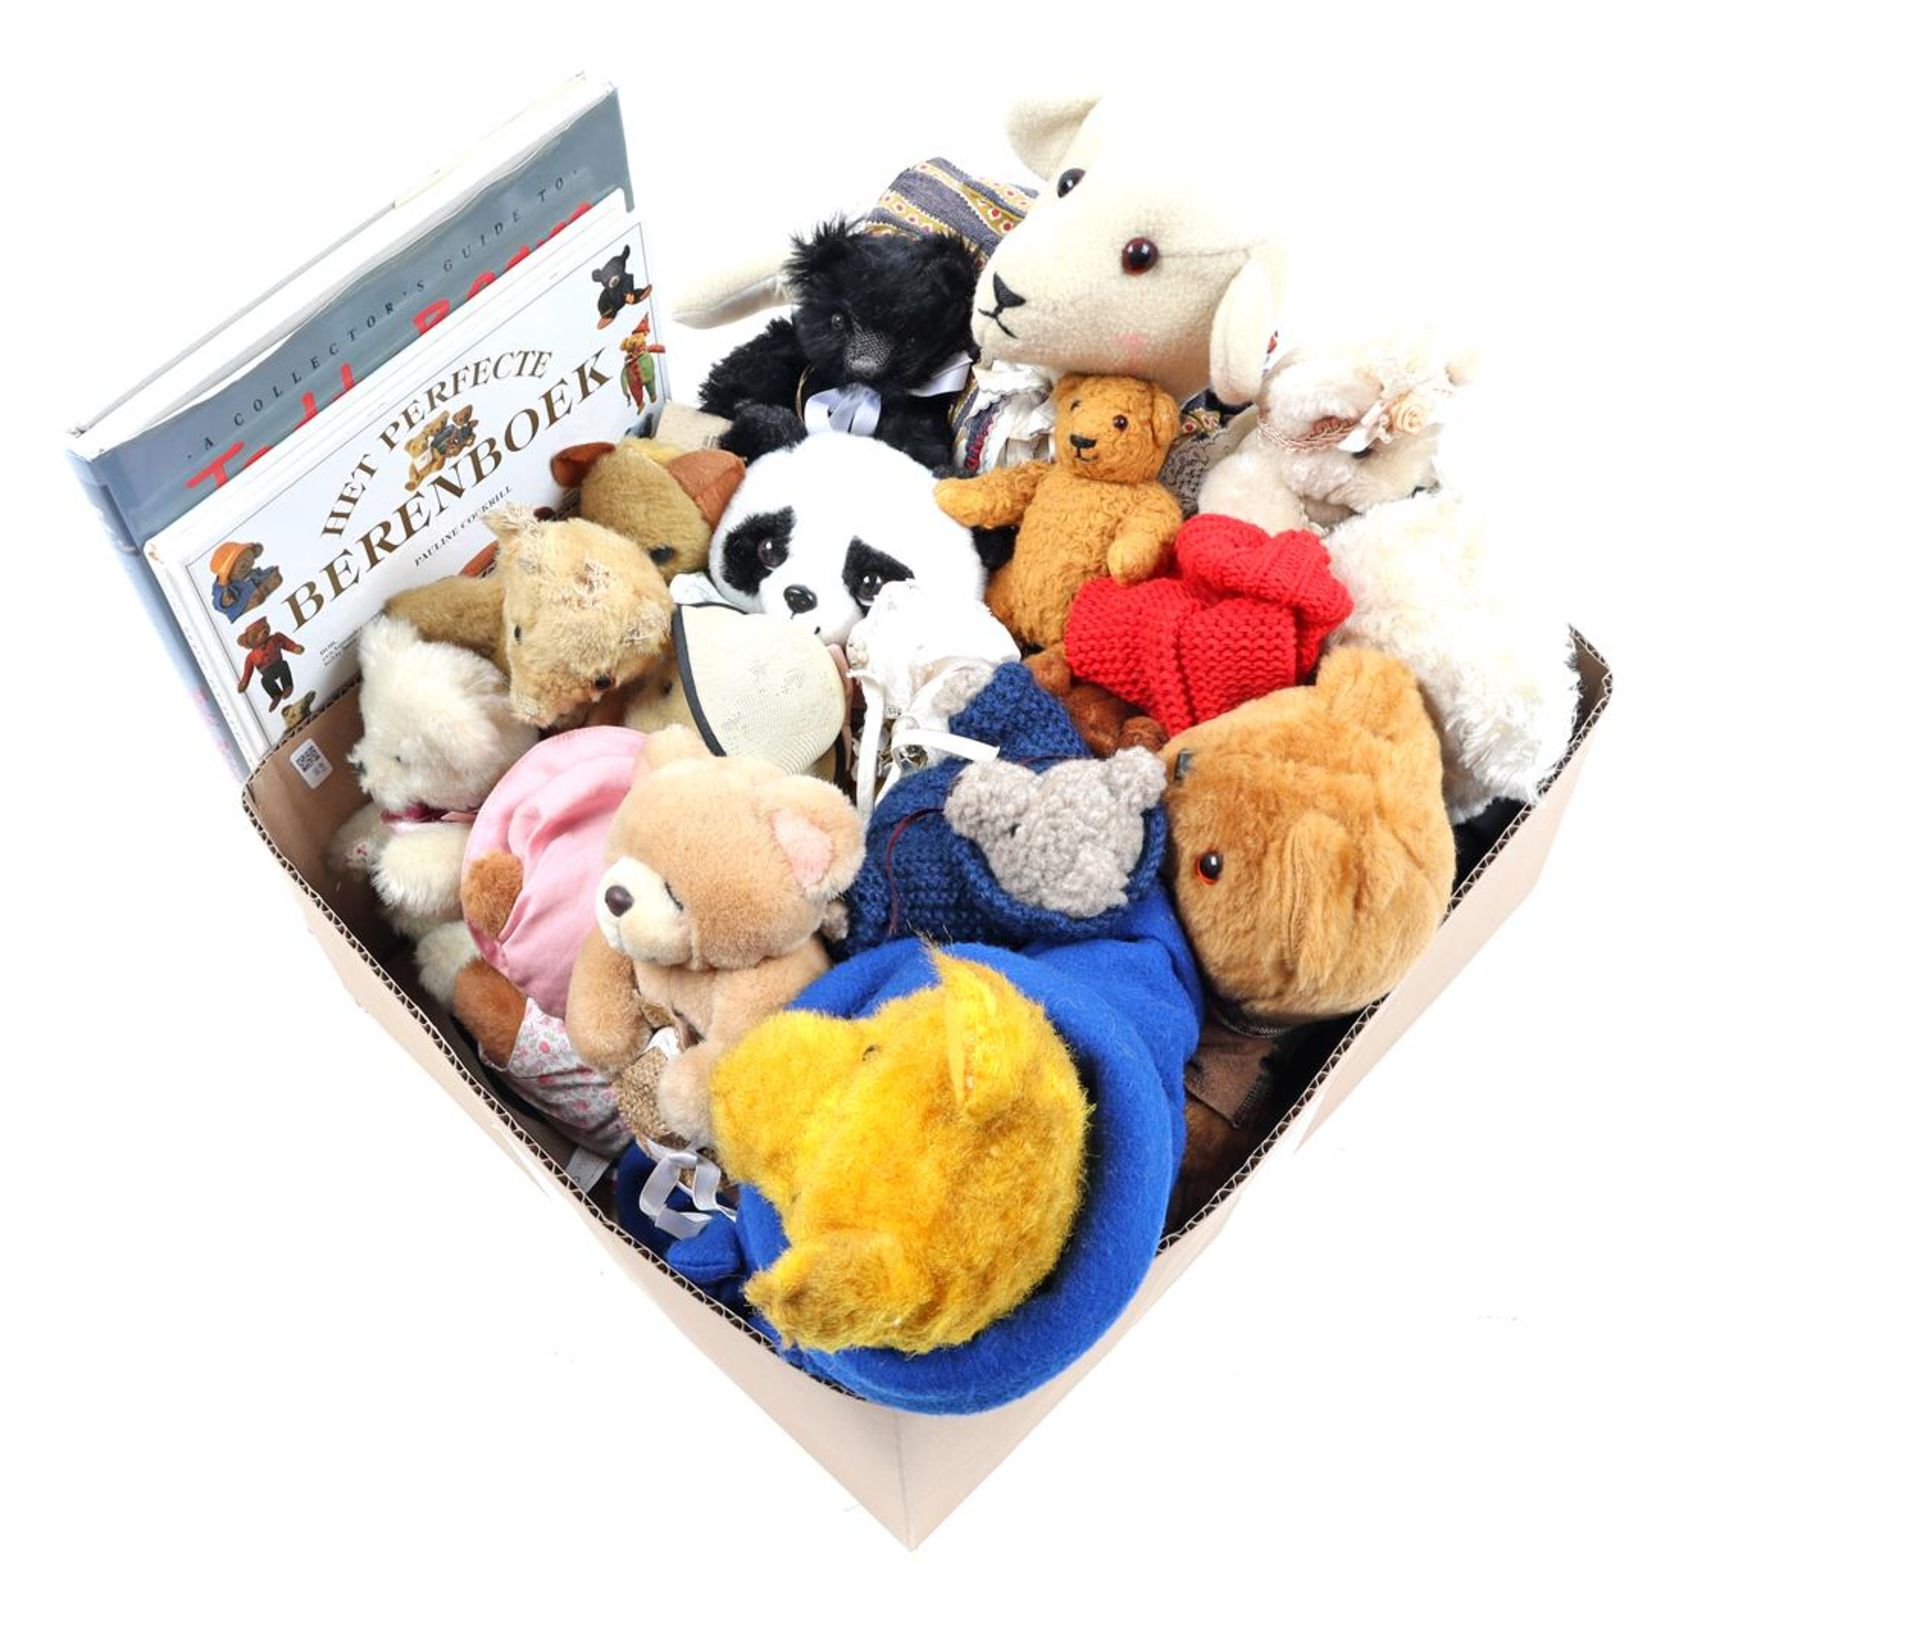 Box with various teddy bears